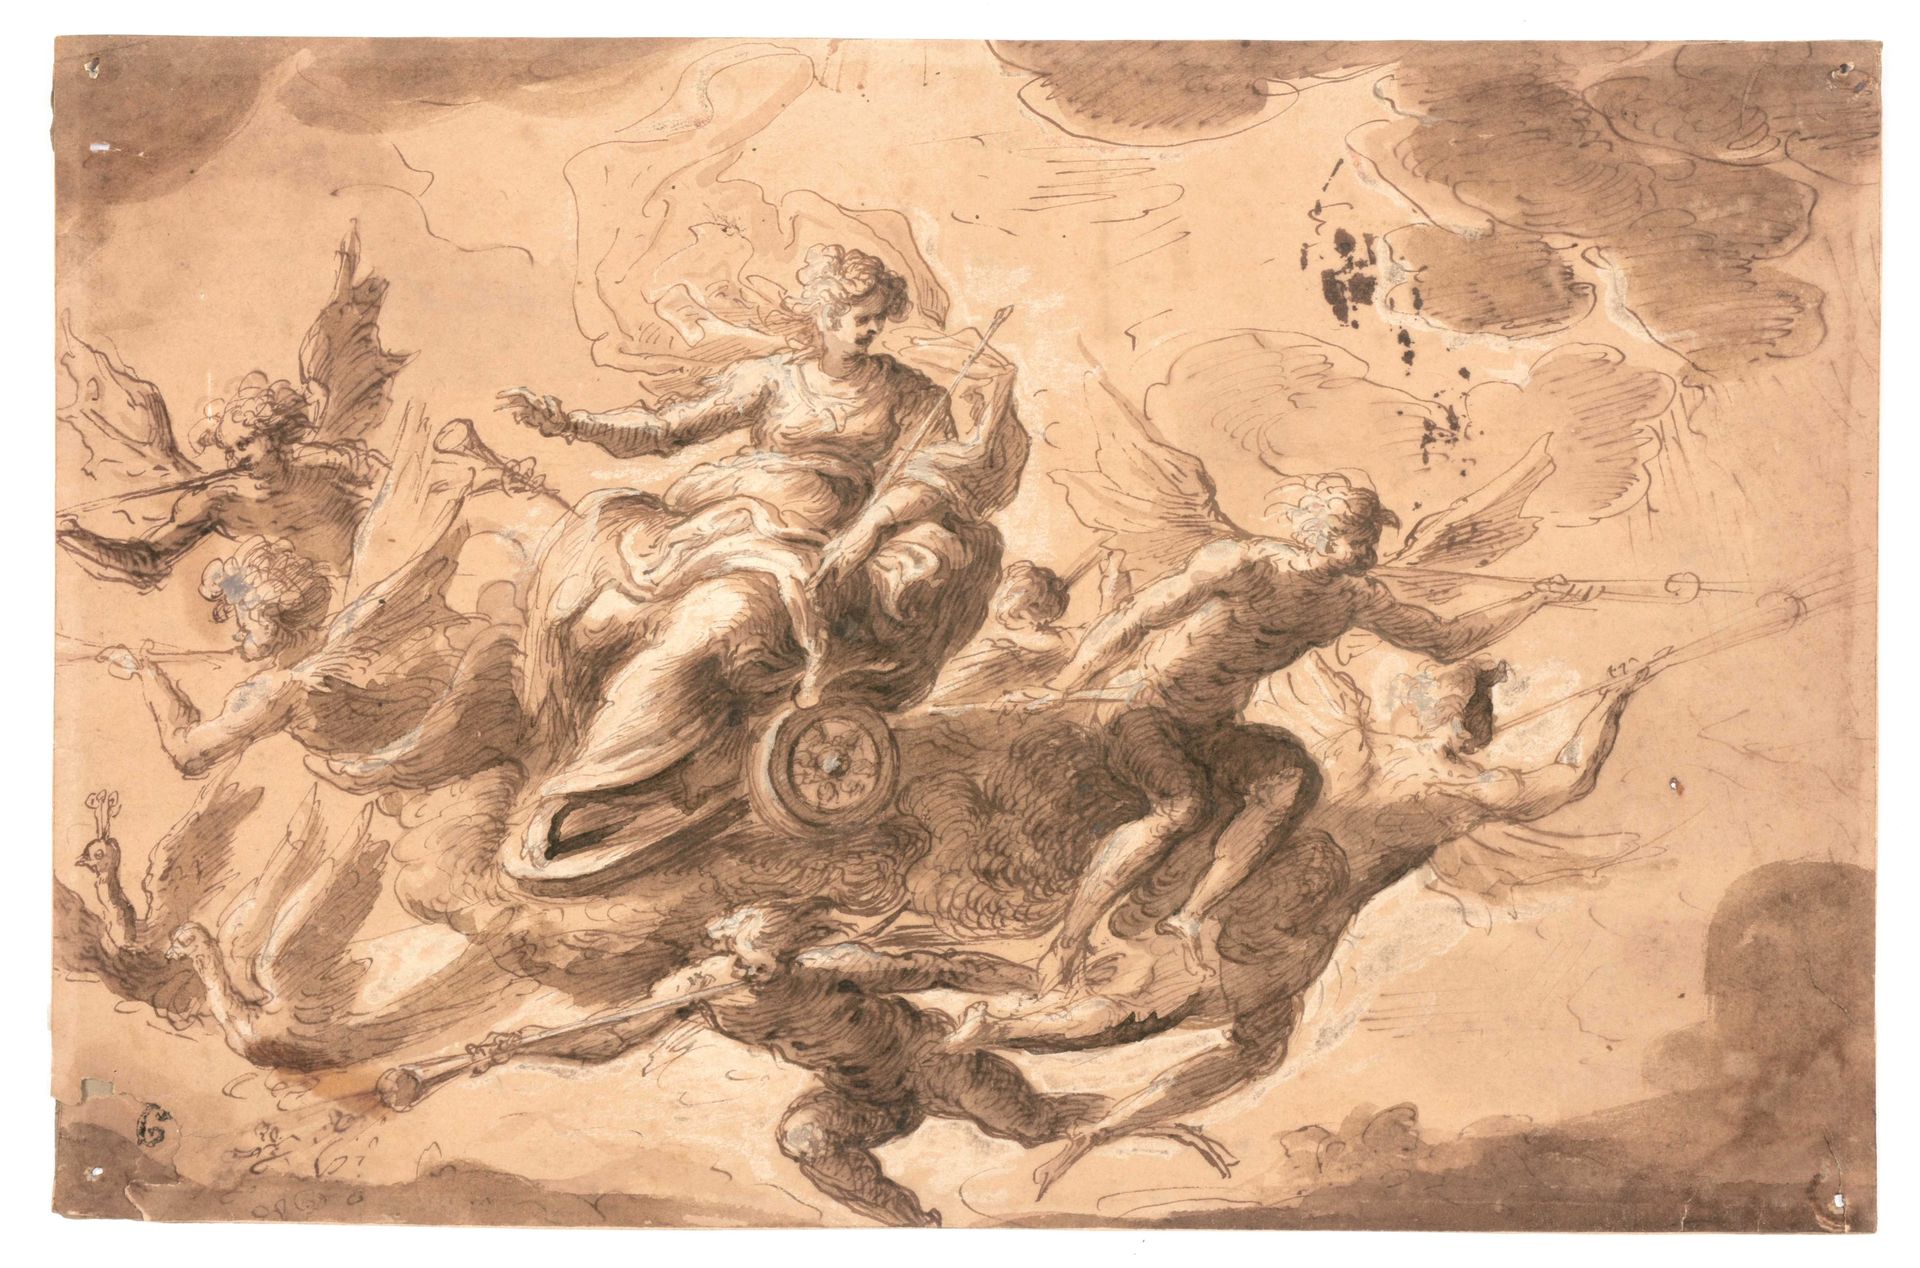 [VLAAMSE SCHOOL] 作为heidense godin朱诺/赫拉的战斗寓意

绘画作品(19 x 29.5 cm)，内页为空白。在一辆大马车上，有两&hellip;